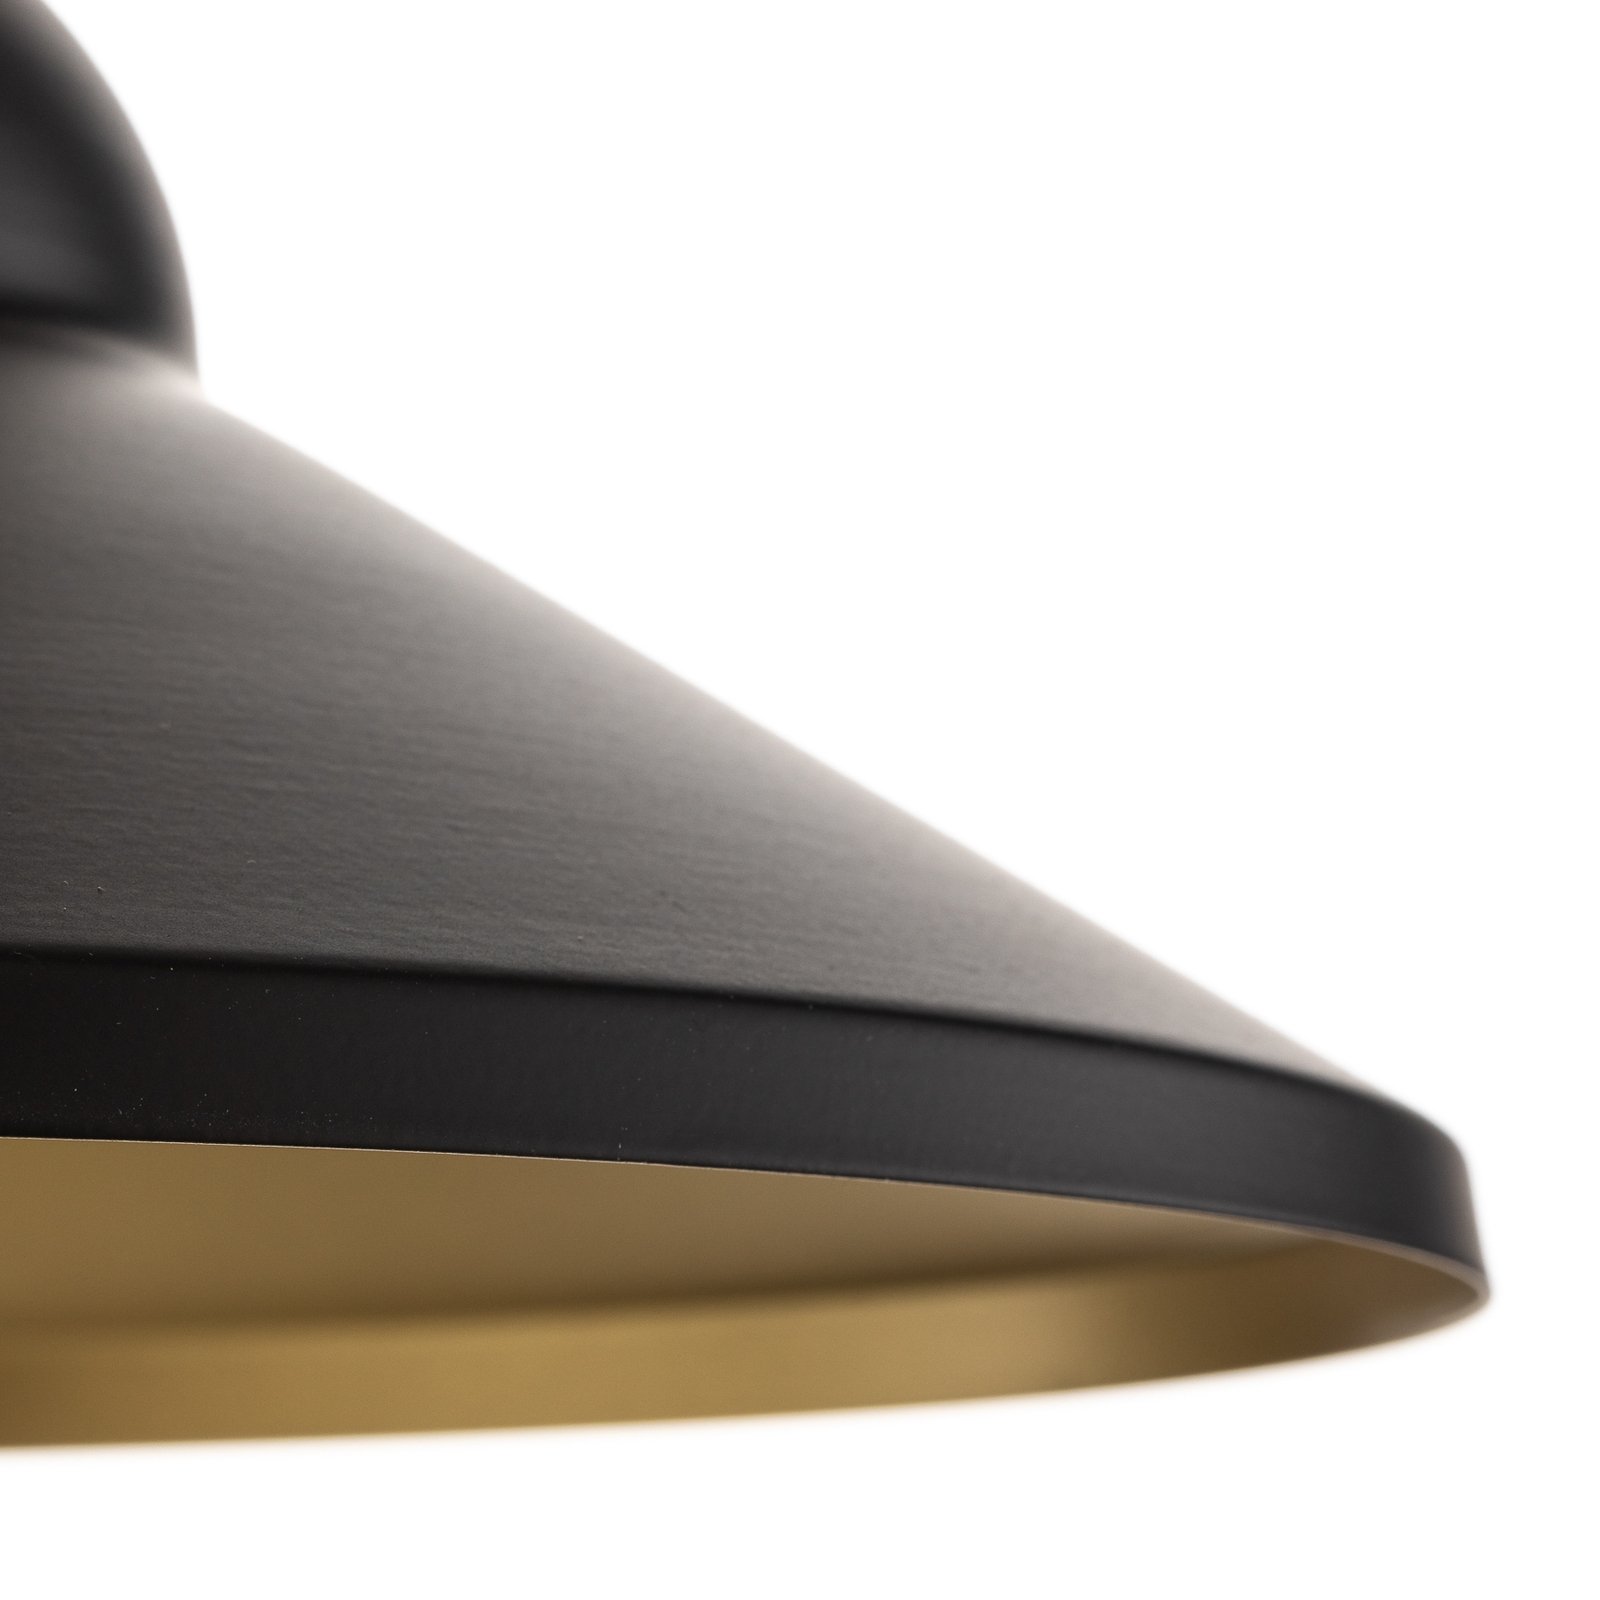 Taft hanglamp met kap in zwart en goud